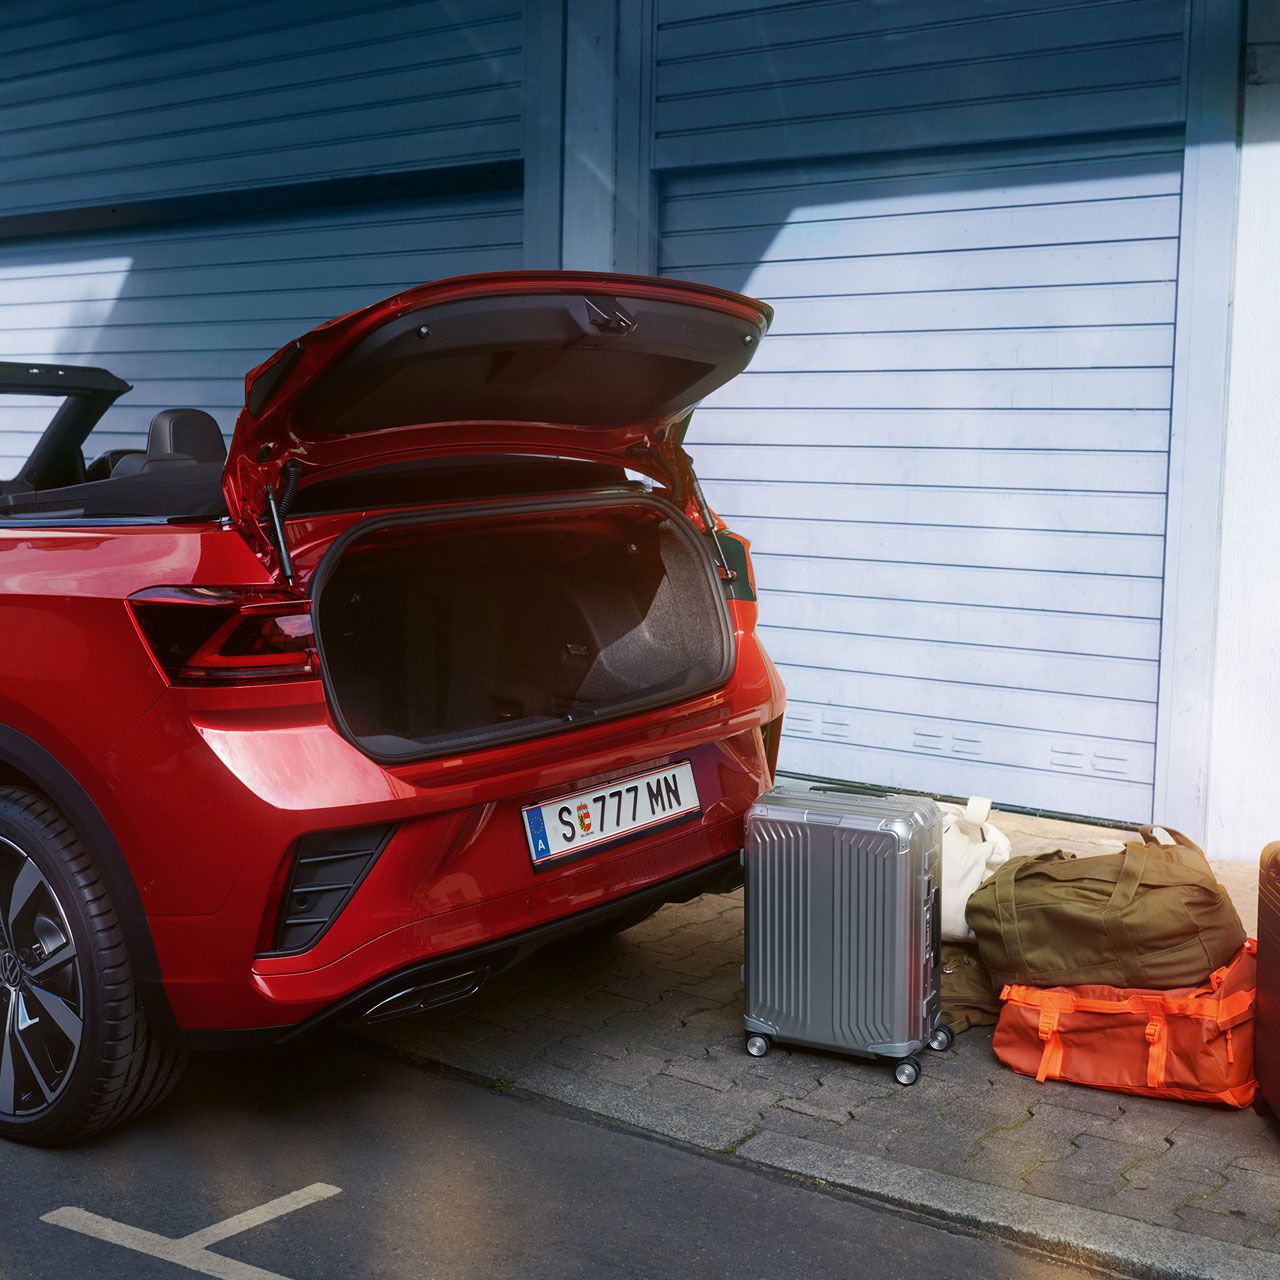 Heckansicht des VW T-Roc Cabriolet mit geöffnetem Dach und geöffnetem Kofferraum, davor stehen Koffer auf der Straße